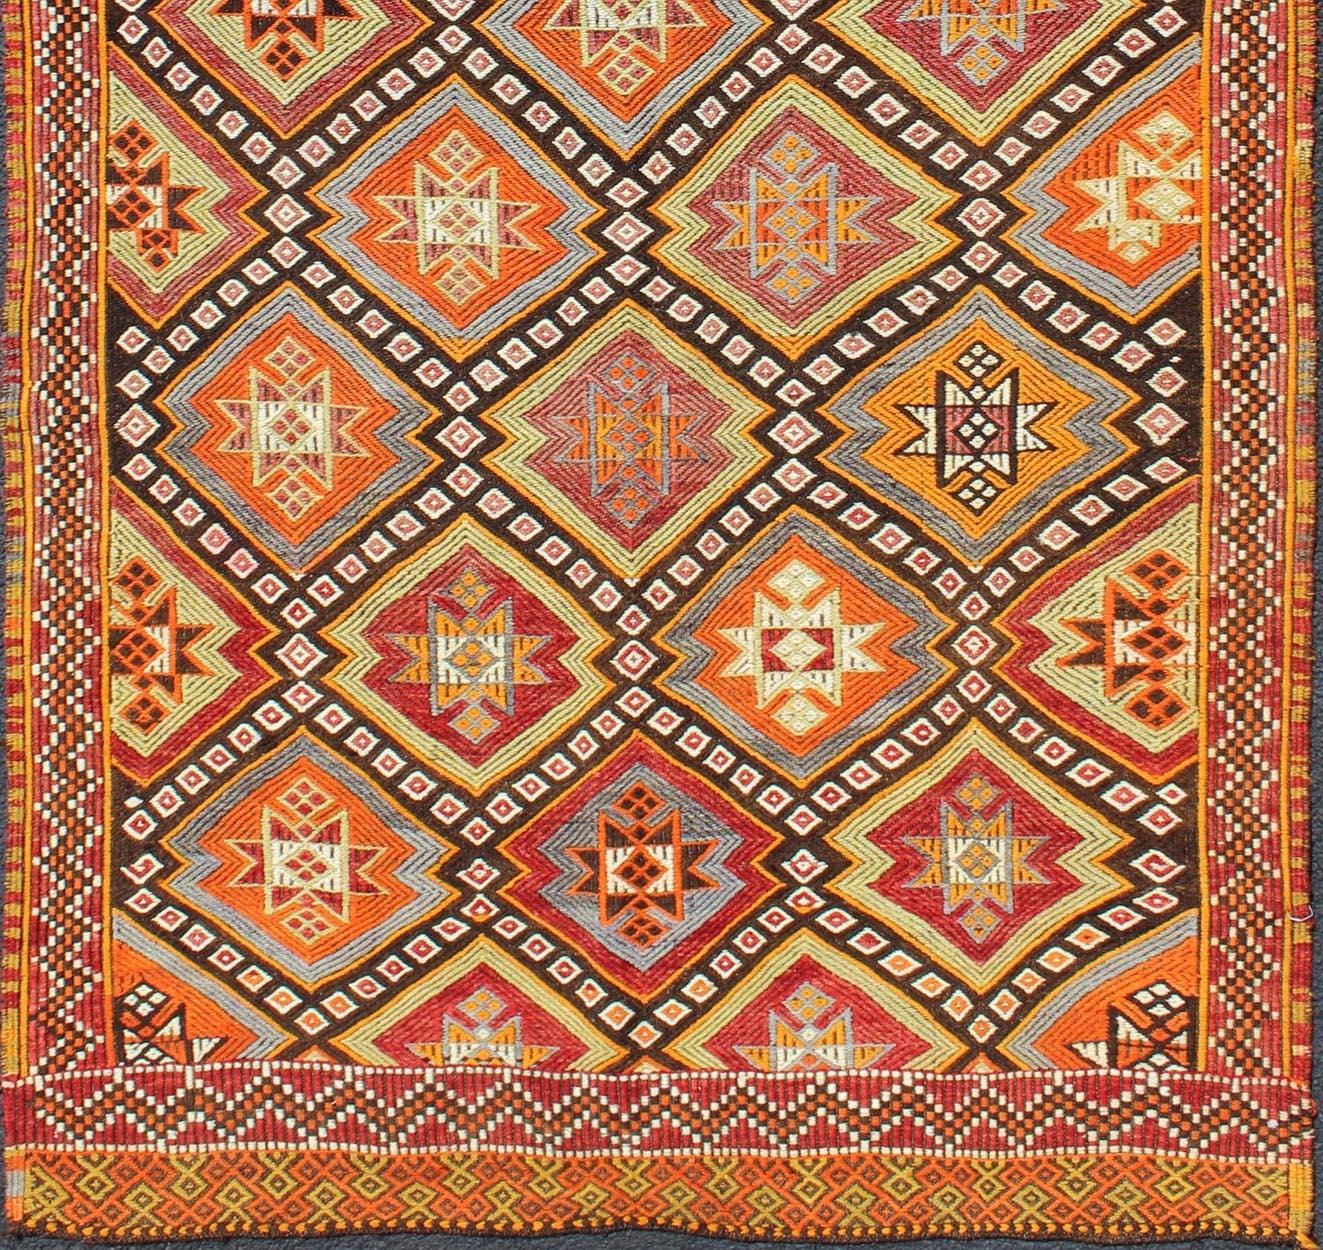 Kilim moderne tribal turc coloré, tissé à plat avec broderies, tapis EN-141146, pays d'origine / type : Turquie / Kilim, vers le milieu du 20ème siècle.

Mesures : 4'0'' x 8'7''

Rendu en forme de diamant avec un assortiment d'éléments